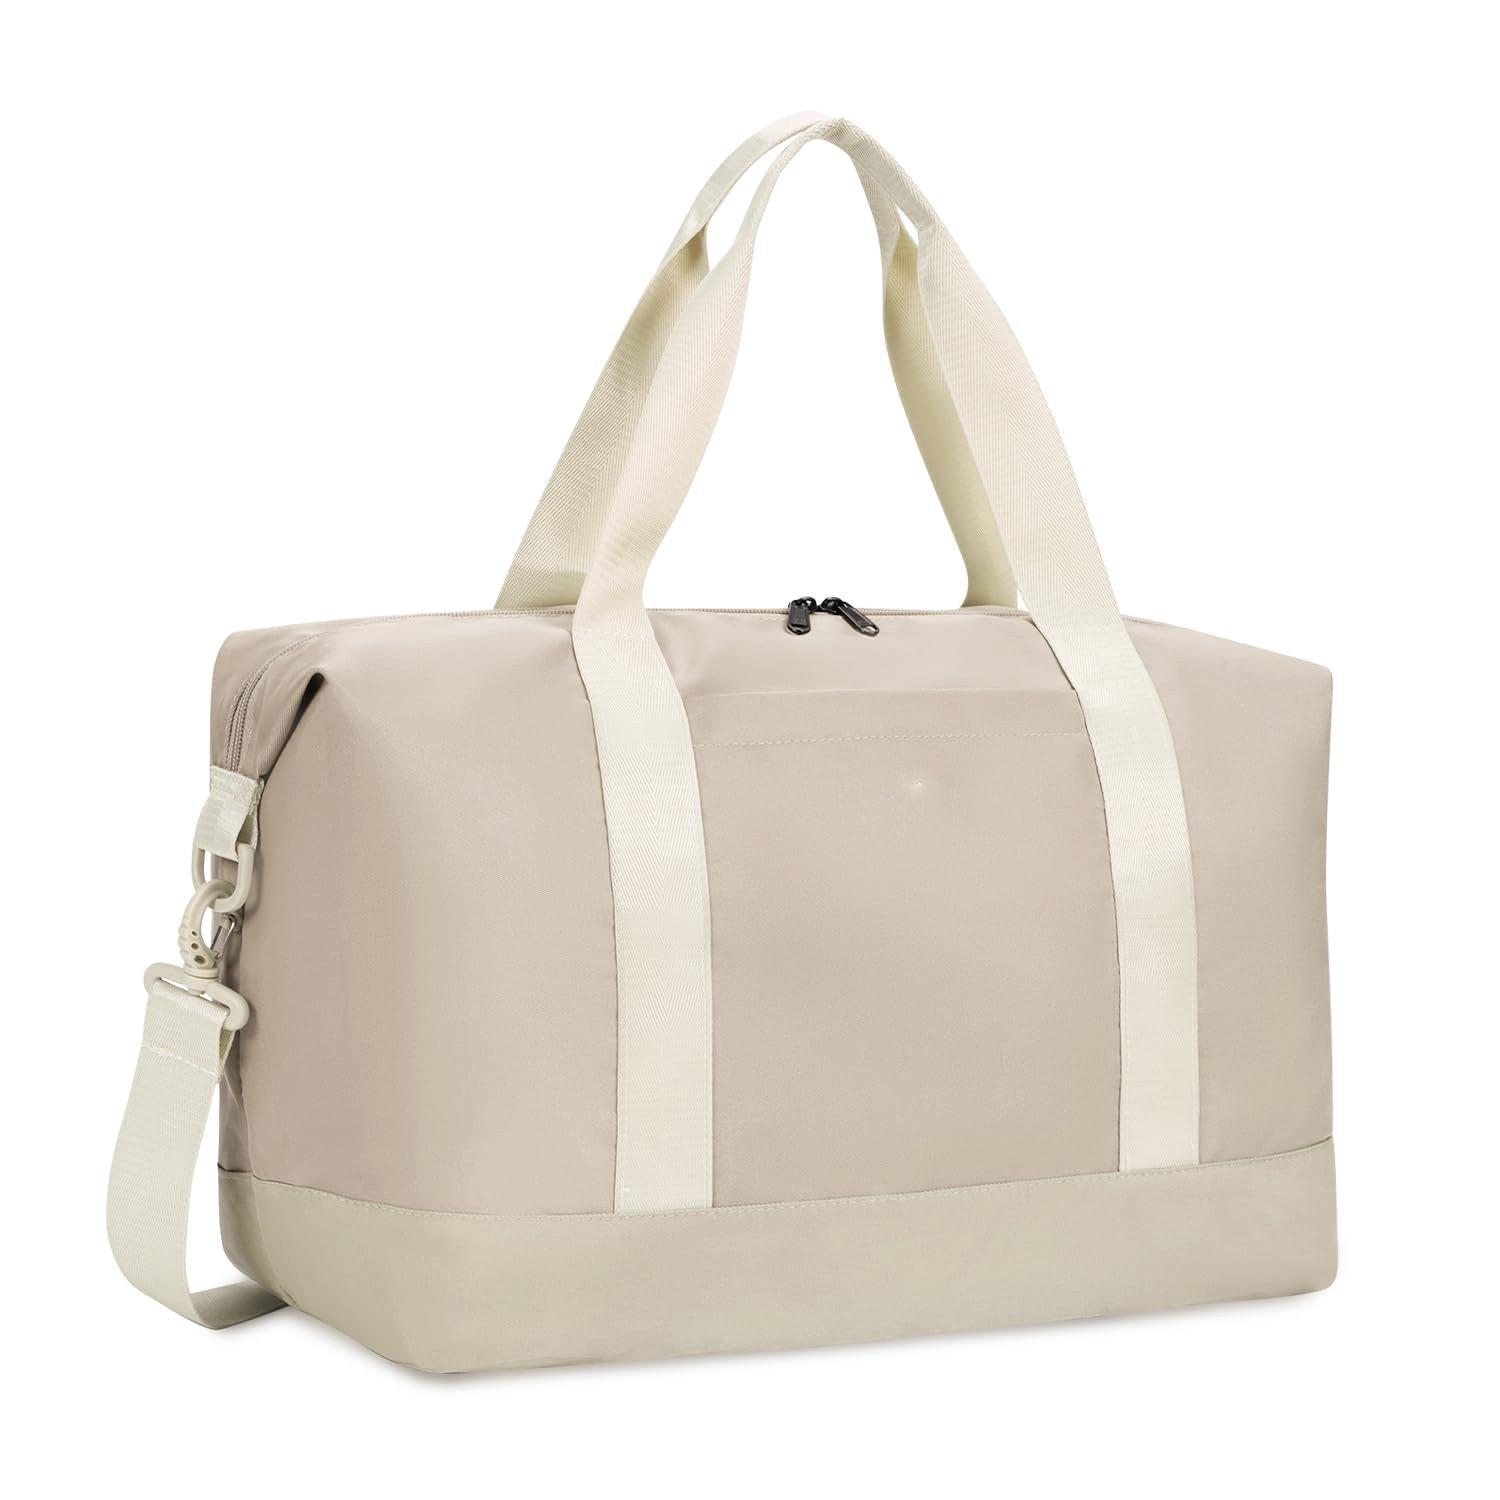 Only-bags.store  Reisetasche Handgepäck groß, für Easyjet faltbare Handgepäcktasche für Flugzeug, Sporttasche mit abnehmbarem Nassbeutel 